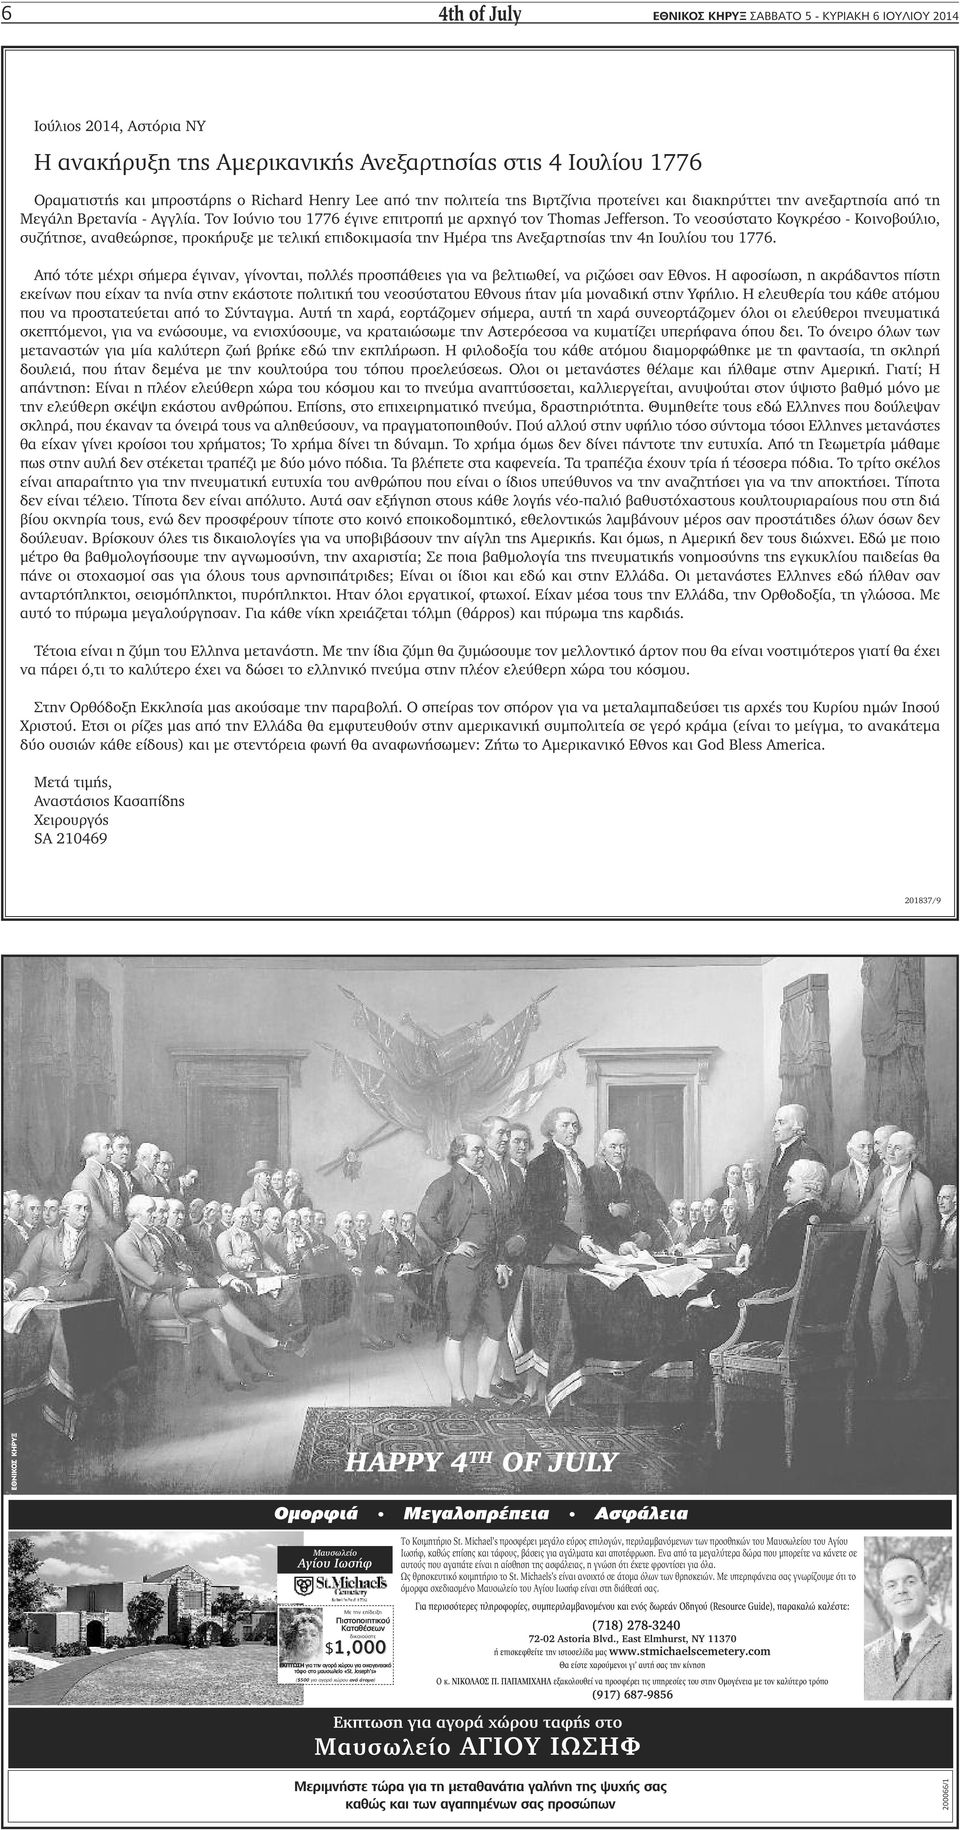 Το νεοσύστατο Κογκρέσο - Κοινοβούλιο, συζήτησε, αναθεώρησε, προκήρυξε με τελική επιδοκιμασία την Ημέρα της Ανεξαρτησίας την 4η Ιουλίου του 1776.